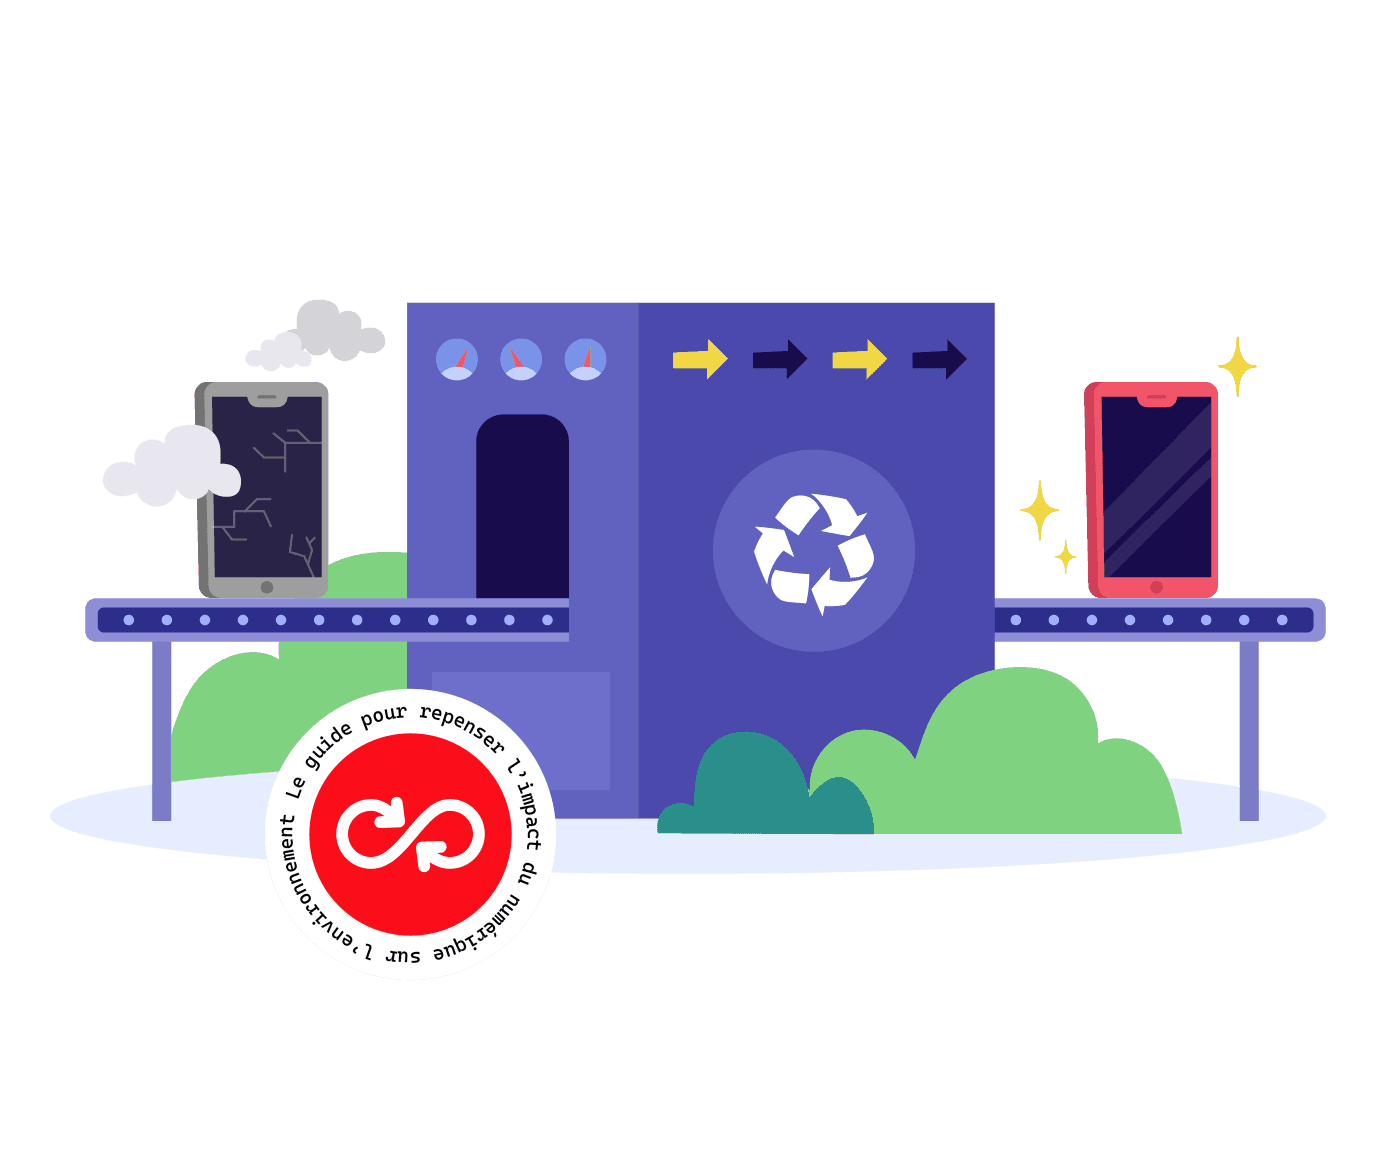 Matériaux recyclés, appareils reconditionnés, données mobiles ou 4G…  Comment téléphoner plus écolo ? - Le Parisien